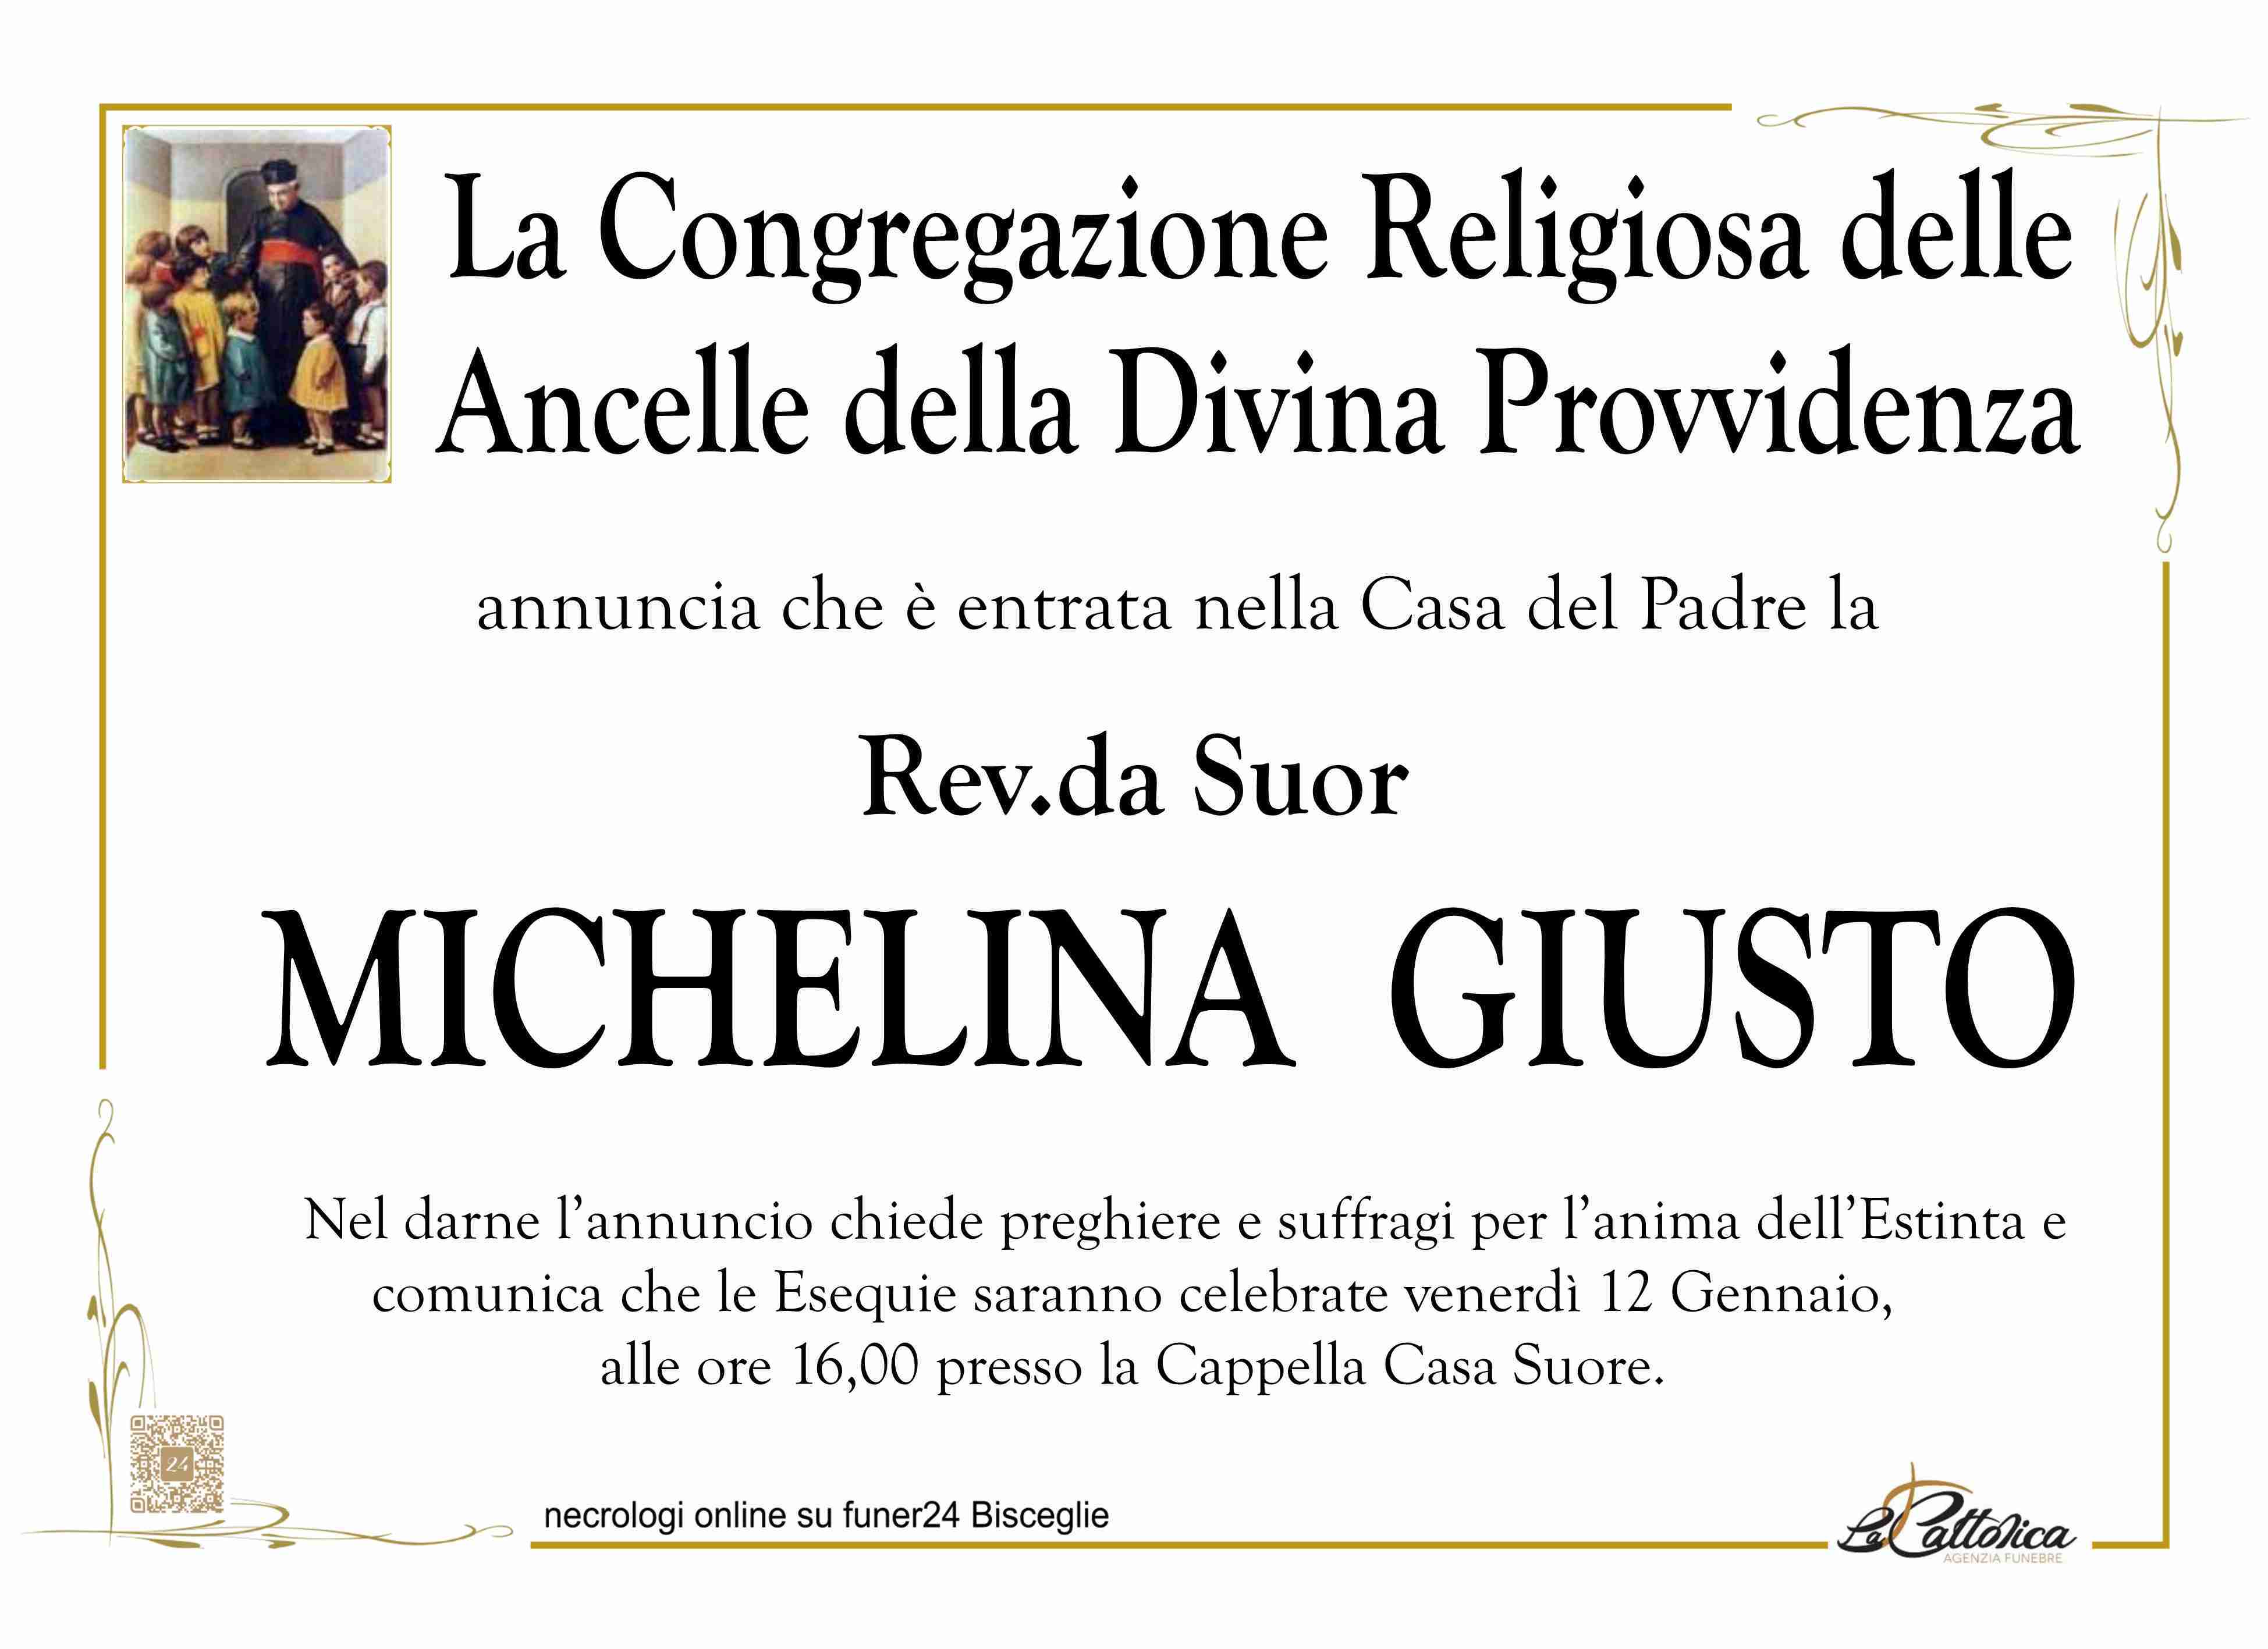 Rev.da Suor Michelina Giusto